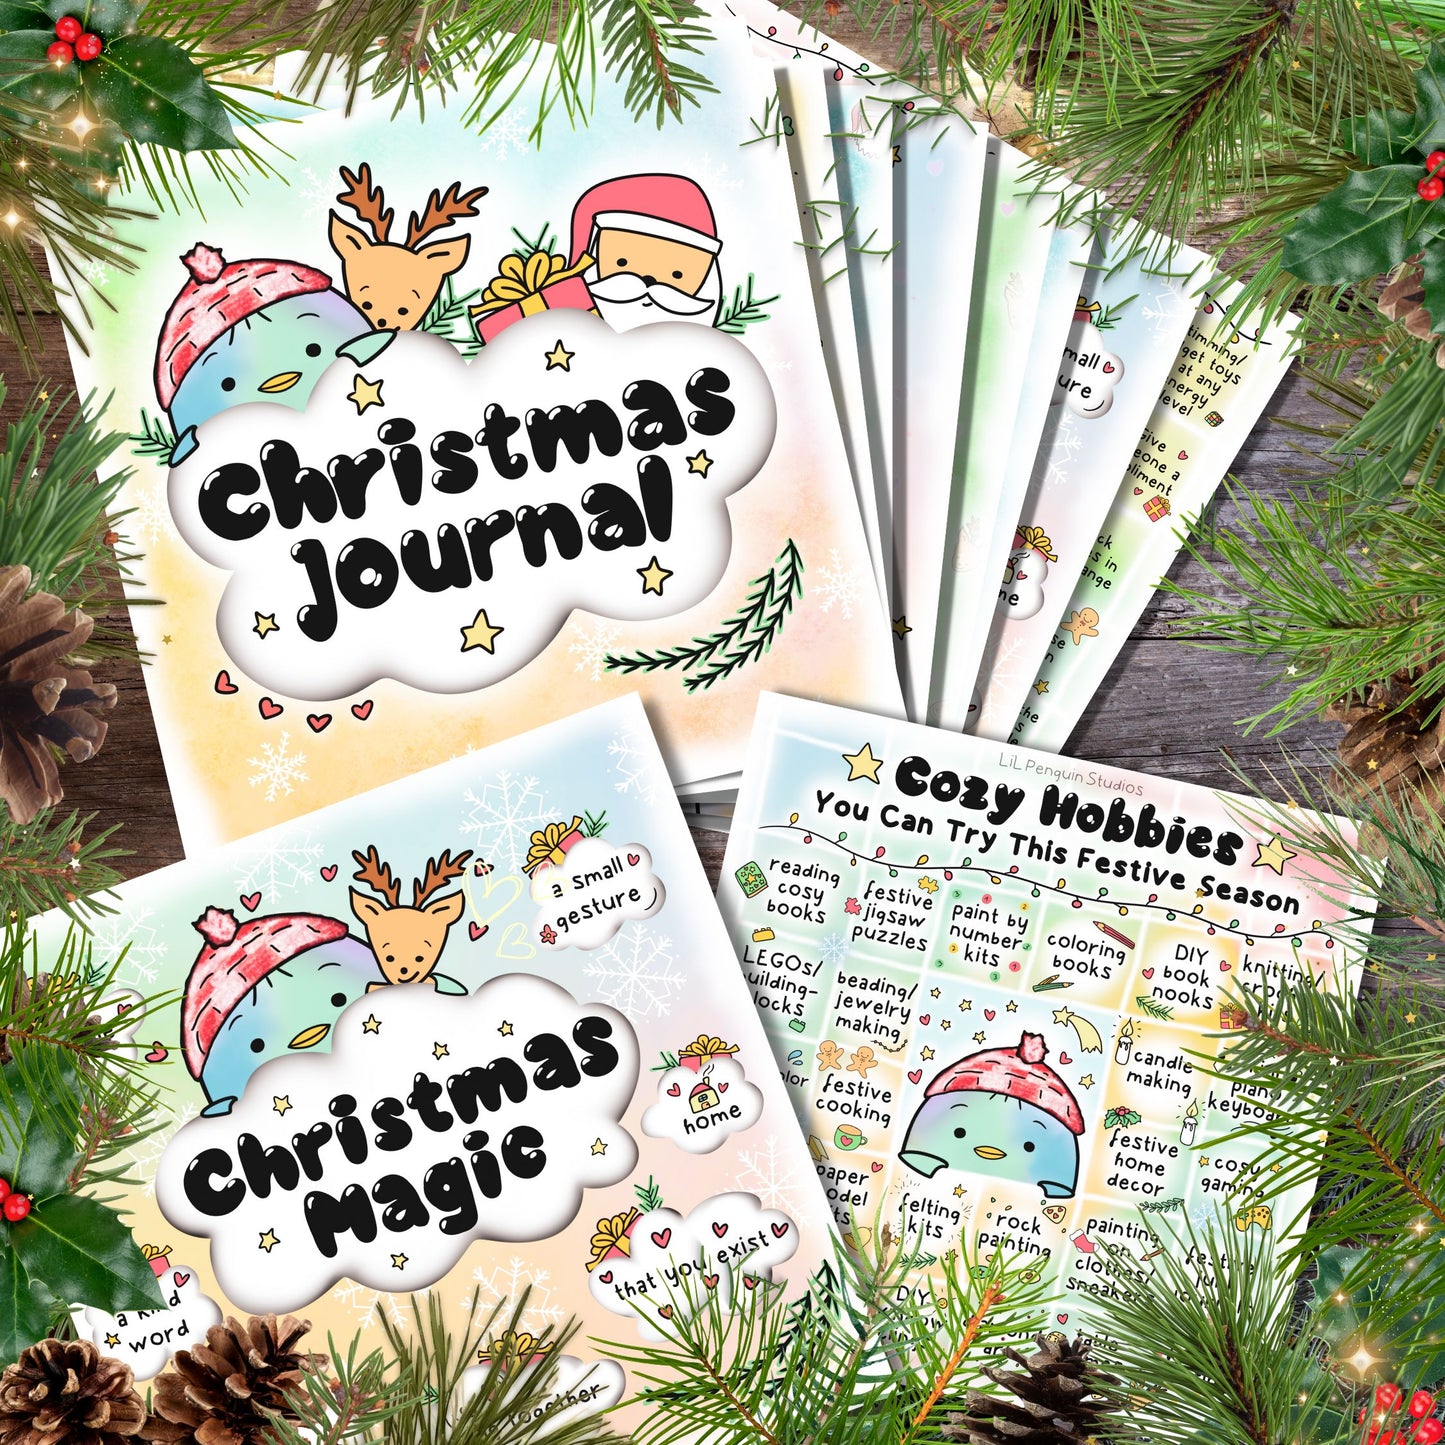 Christmas Journal (Printable) - Personal Use